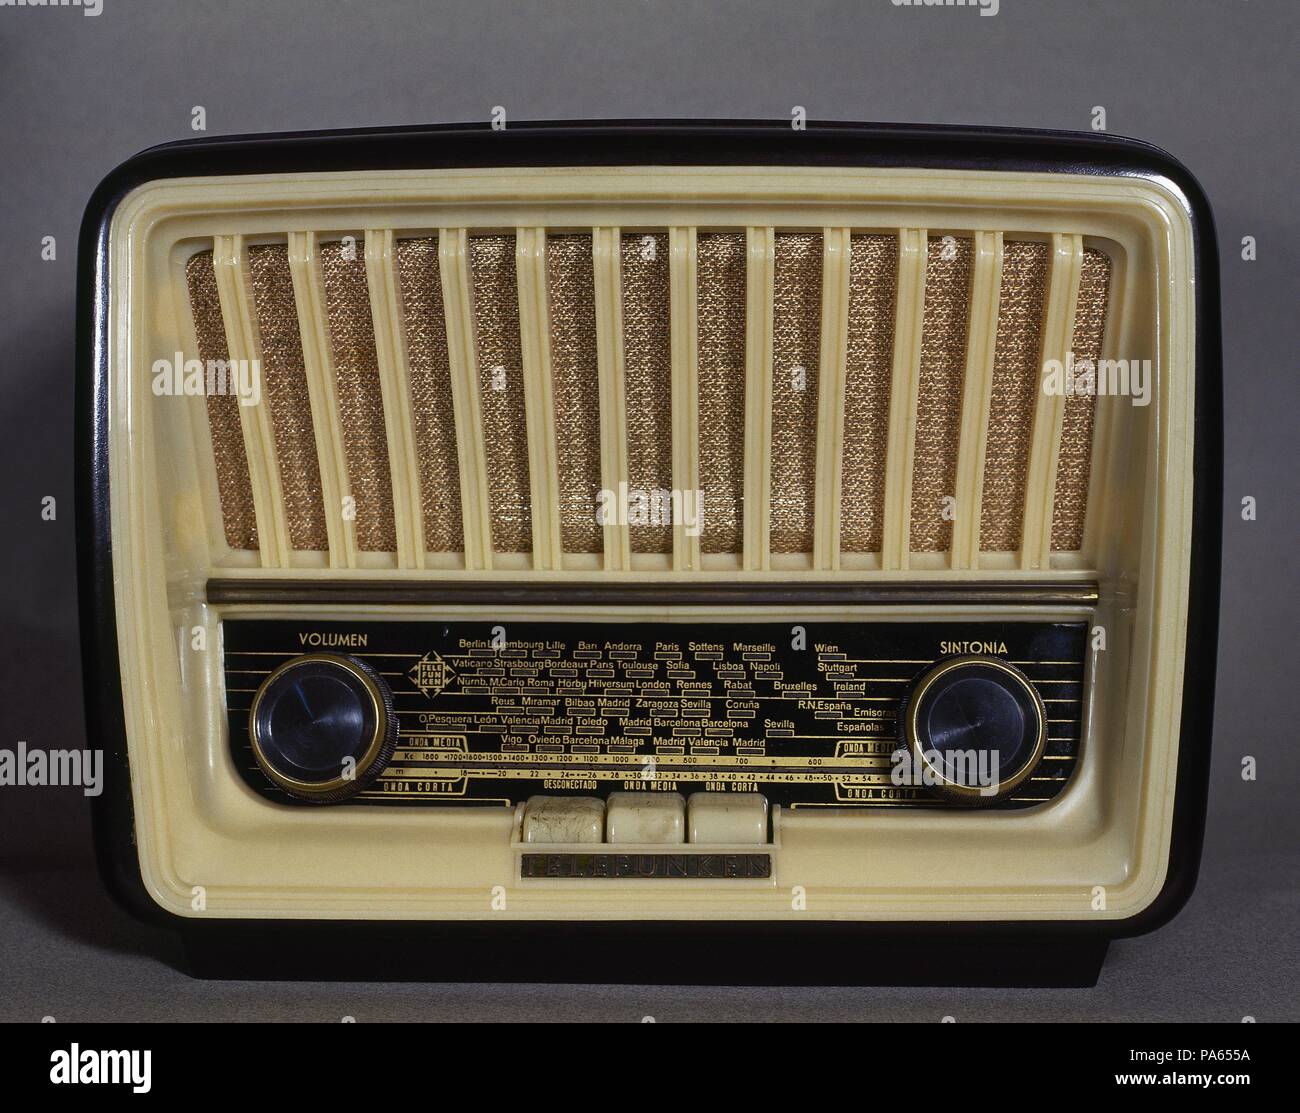 Receptor antiguo de radio de la marca Telefunken, modelo "Capricho",  versión U-1815. Onda media y corta. Año 1958 Stock Photo - Alamy